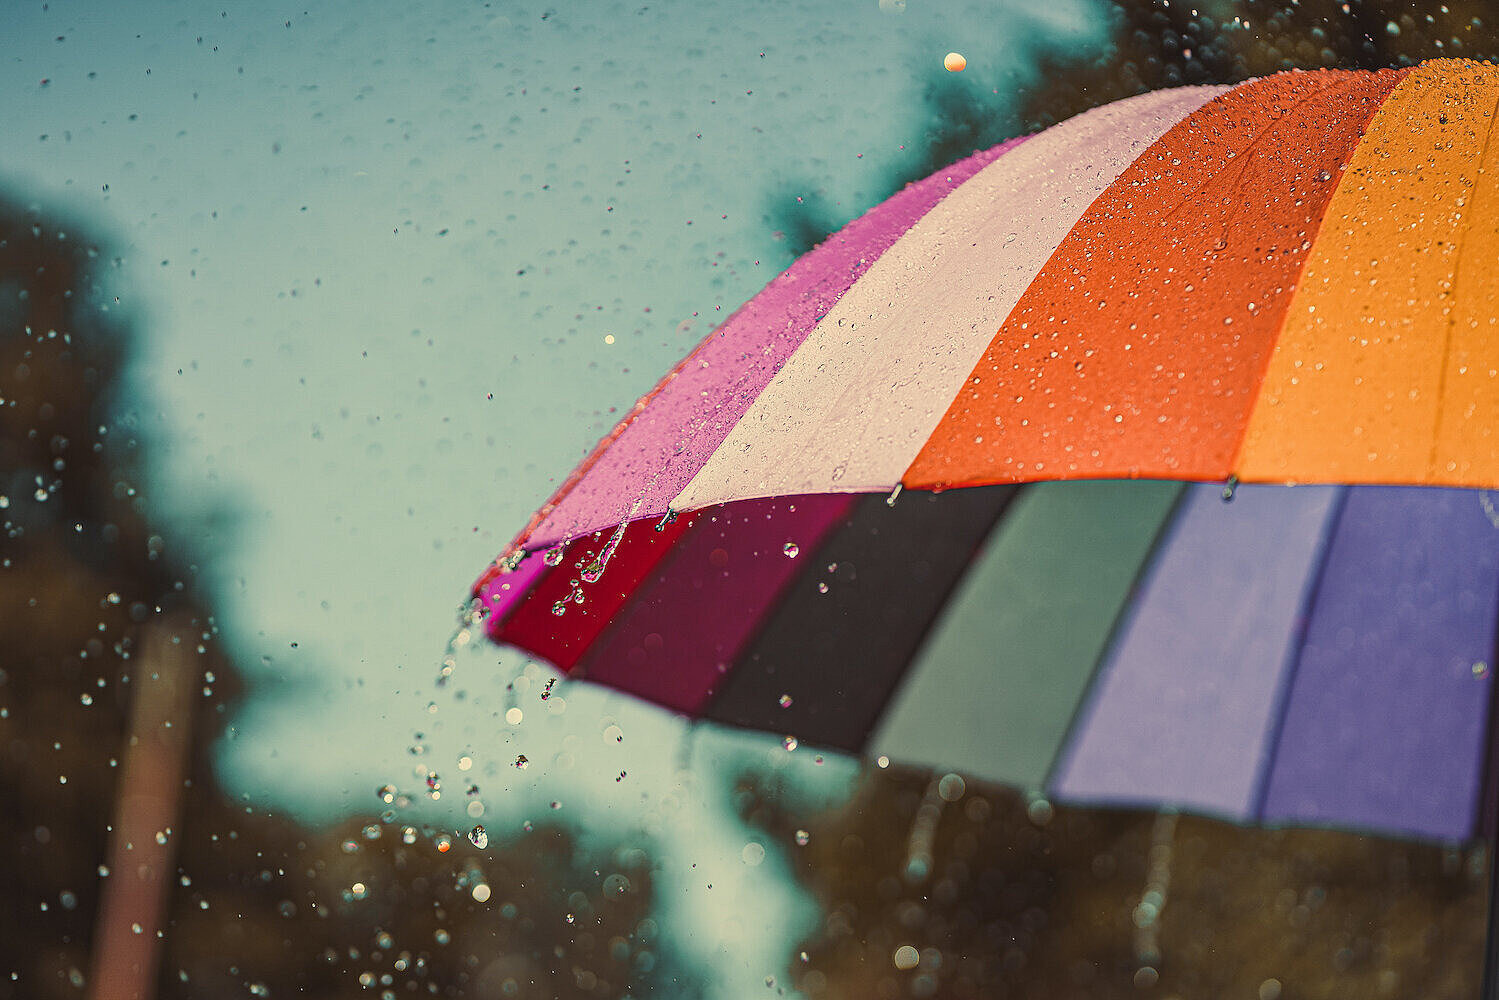 Bunter Regenbogen-Regenschirm bei Regenwetter